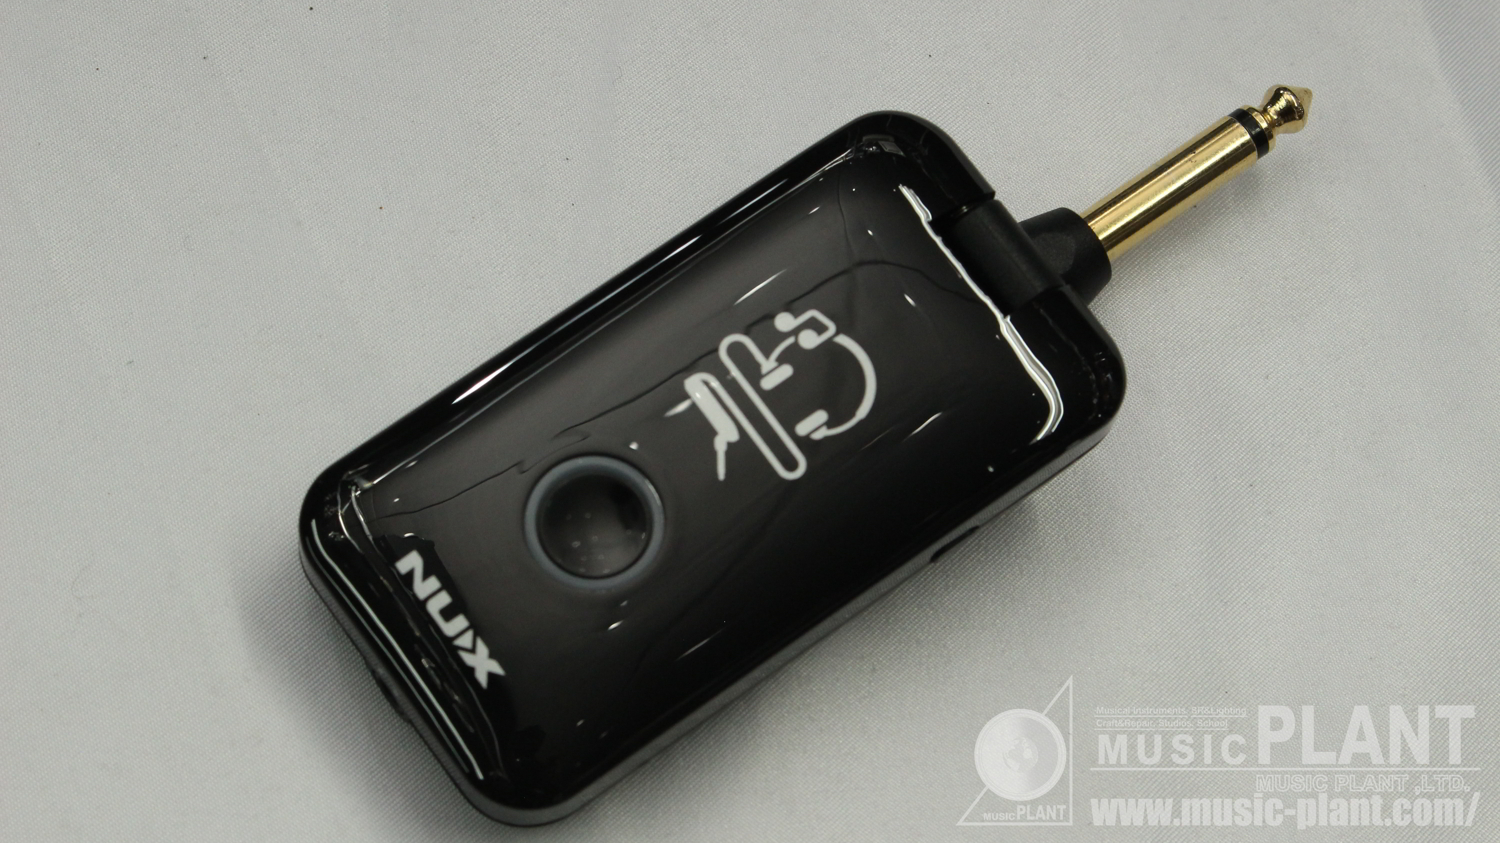 nuX モデリングヘッドフォンアンプMP-2 Mighty Plug中古()売却済みです。あしからずご了承ください。 | MUSIC